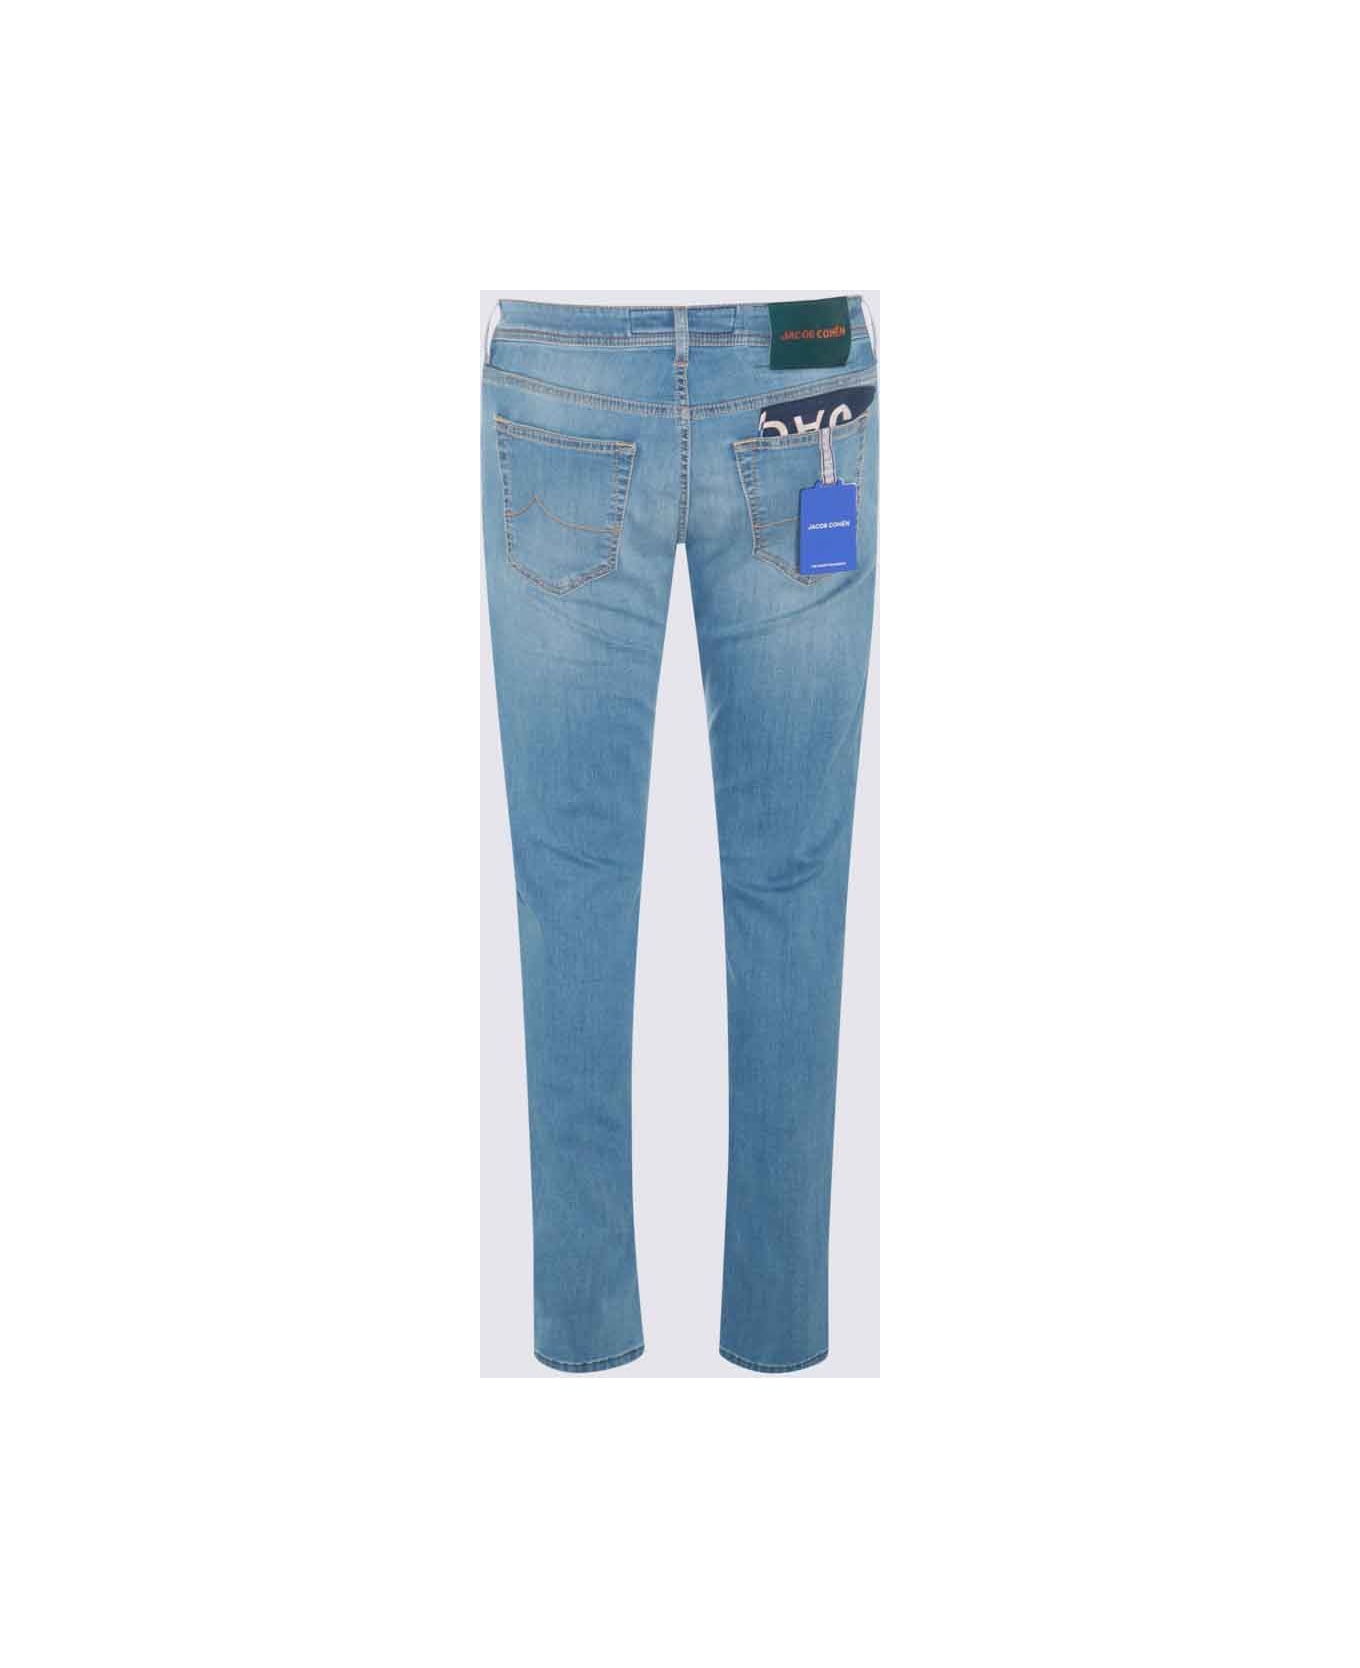 Jacob Cohen Light Blue Cotton Denim Jeans - Blu デニム